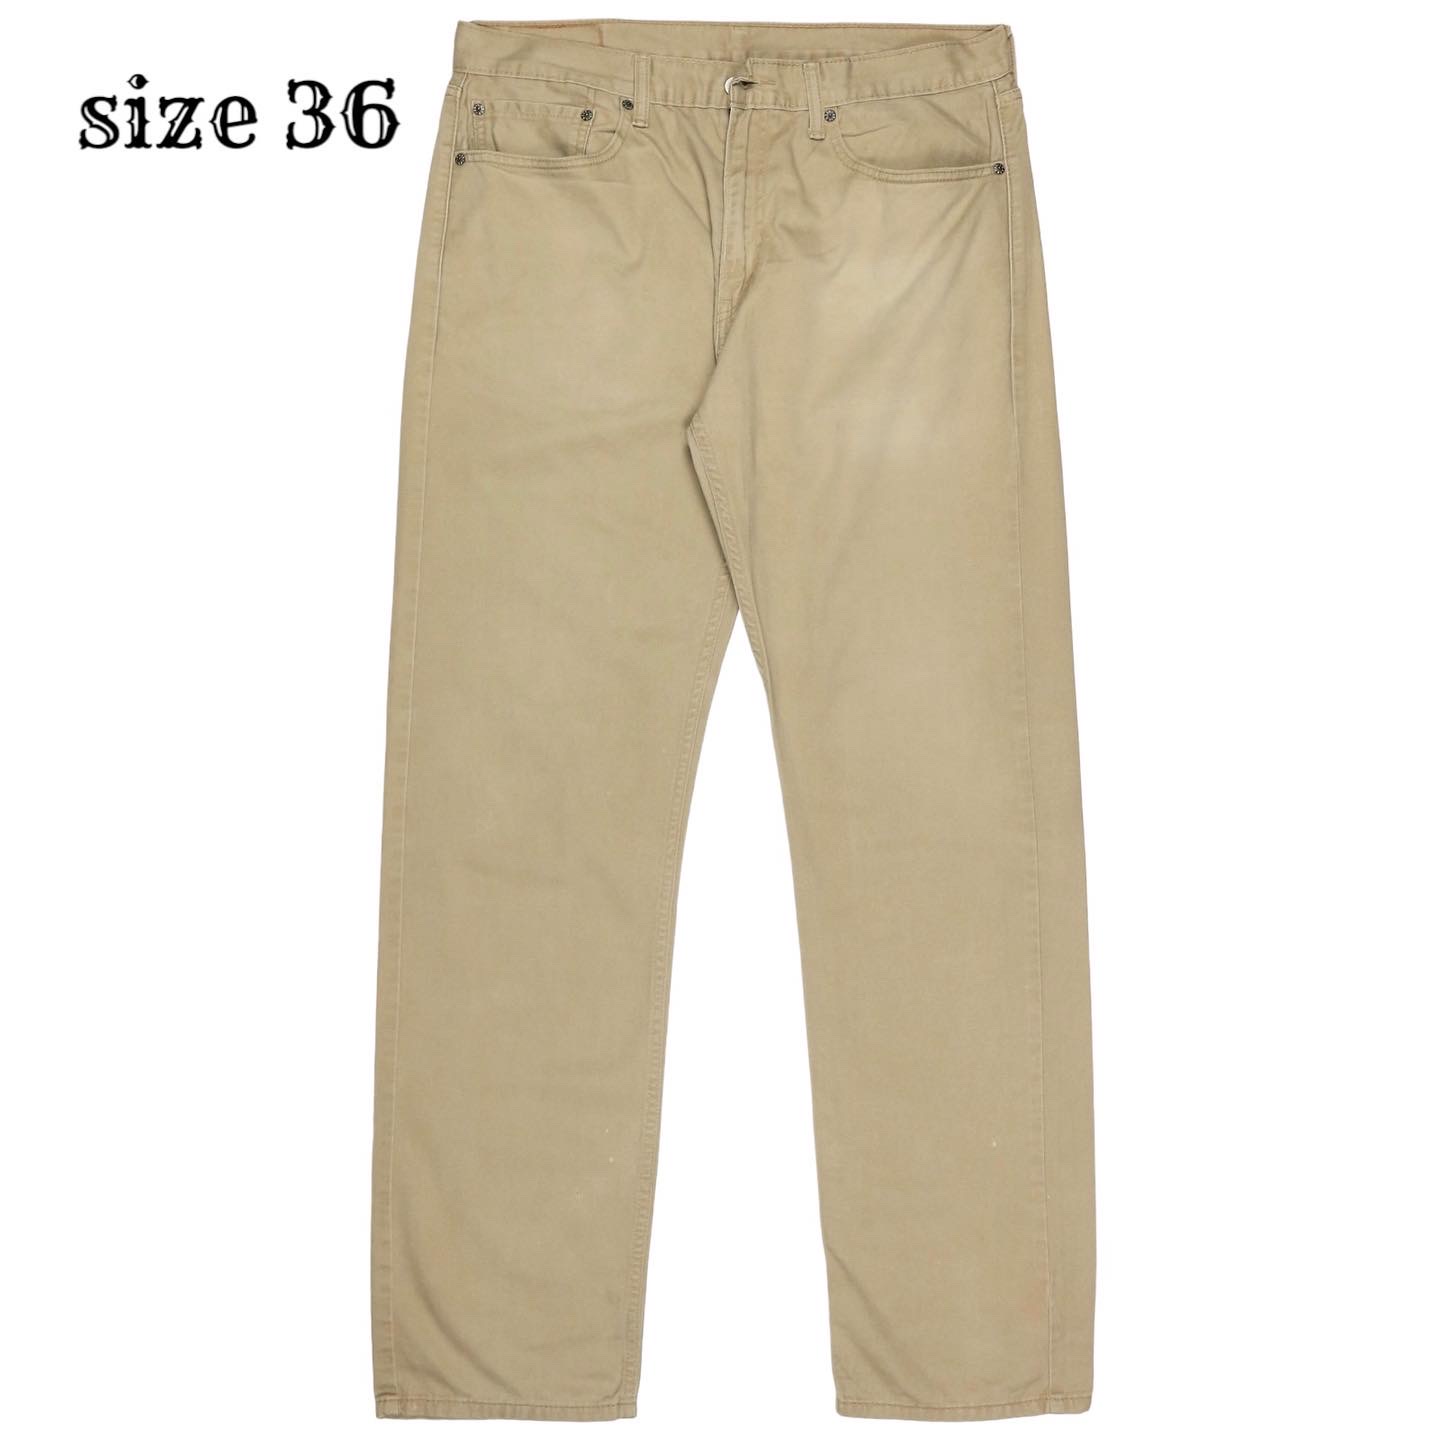 Levi’s 505 Denim Jeans Size 36